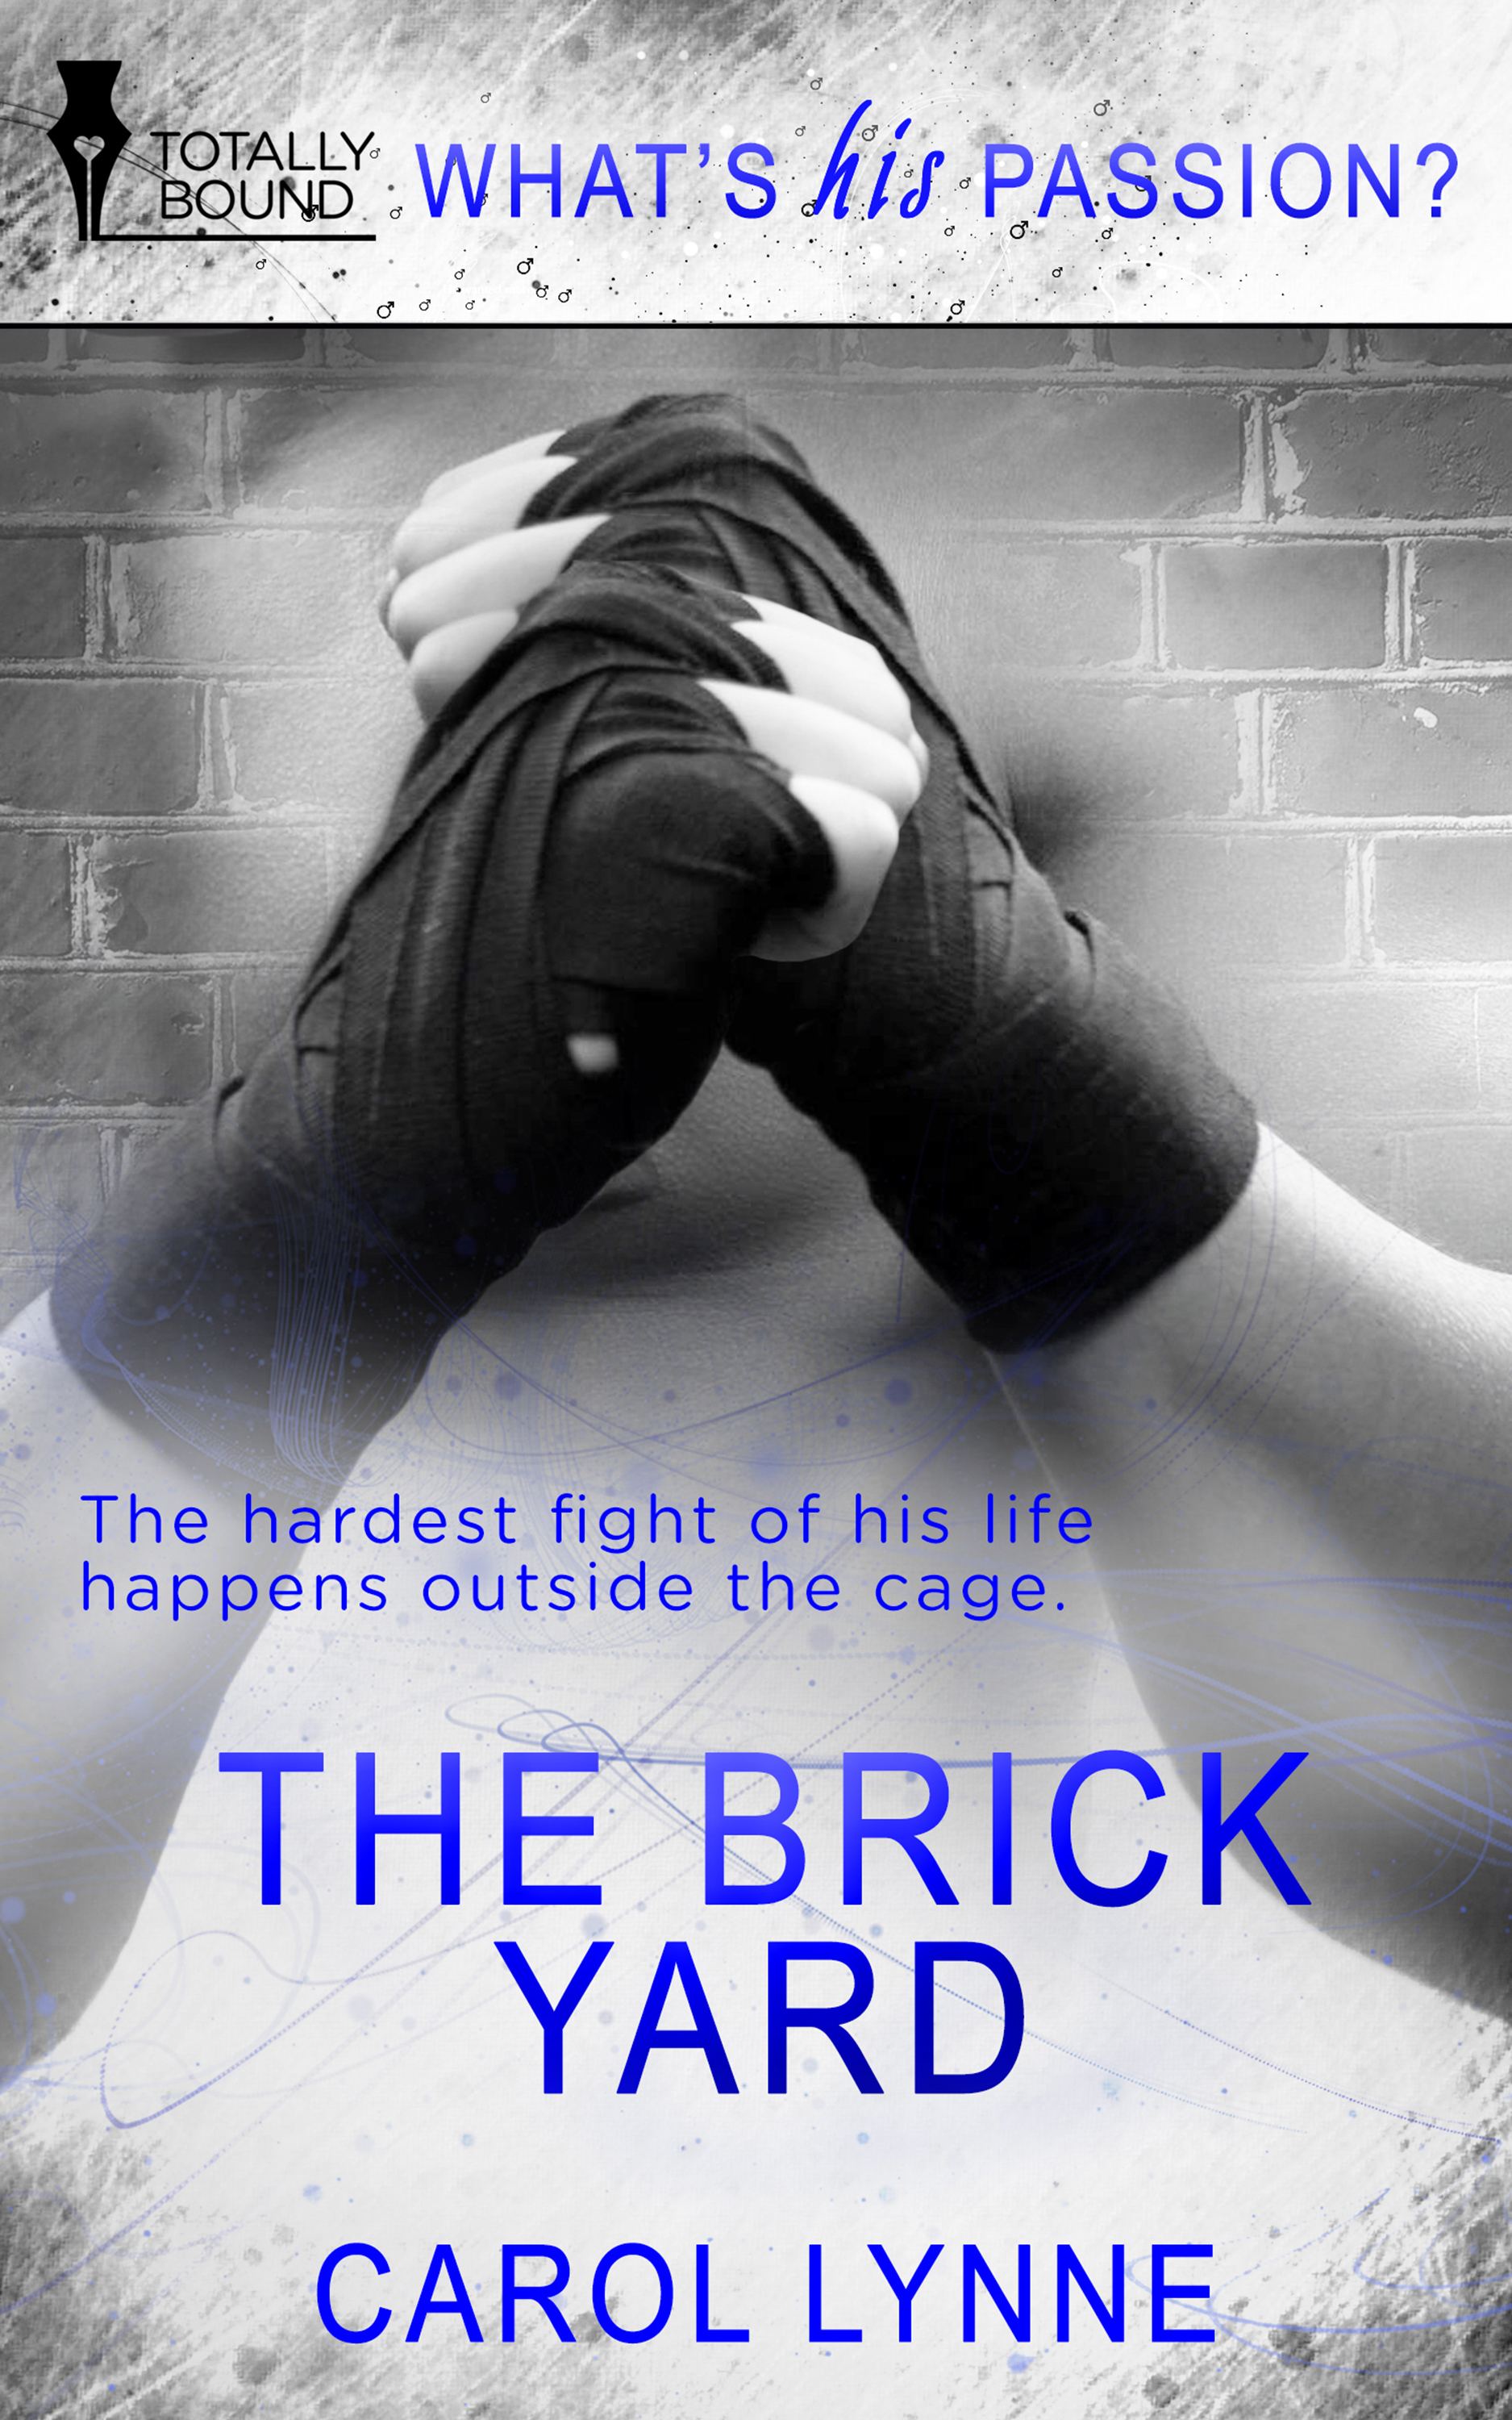 The Brick Yard (2014) by Carol Lynne